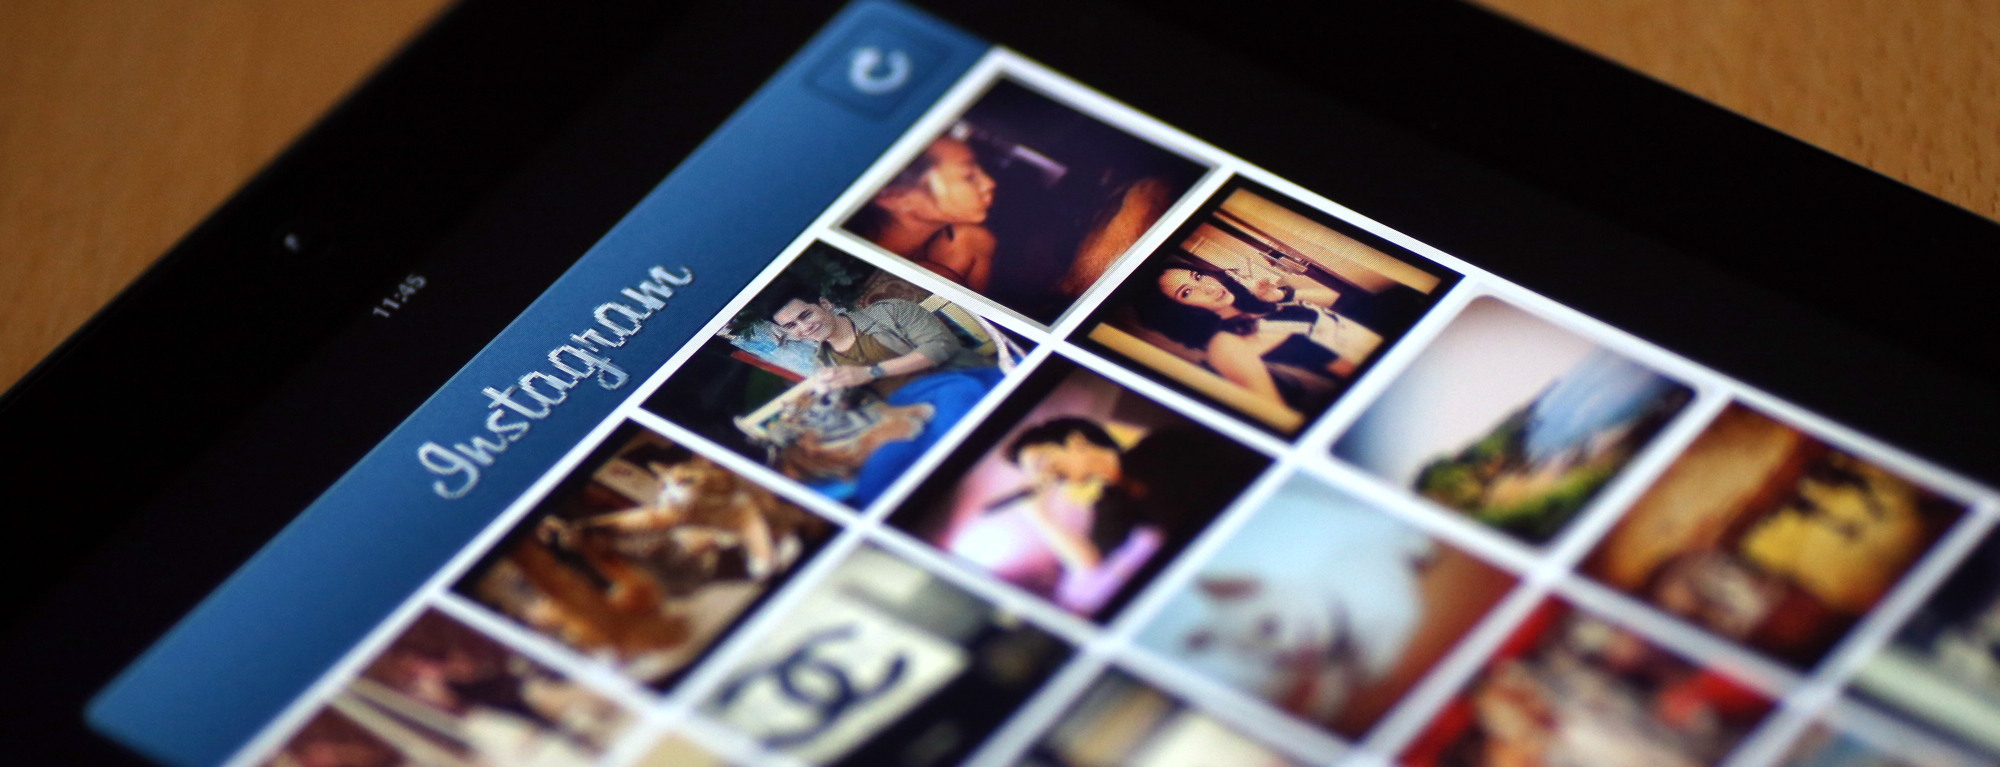 50 cách tăng follower Instagram miễn phí và đơn giản nhất